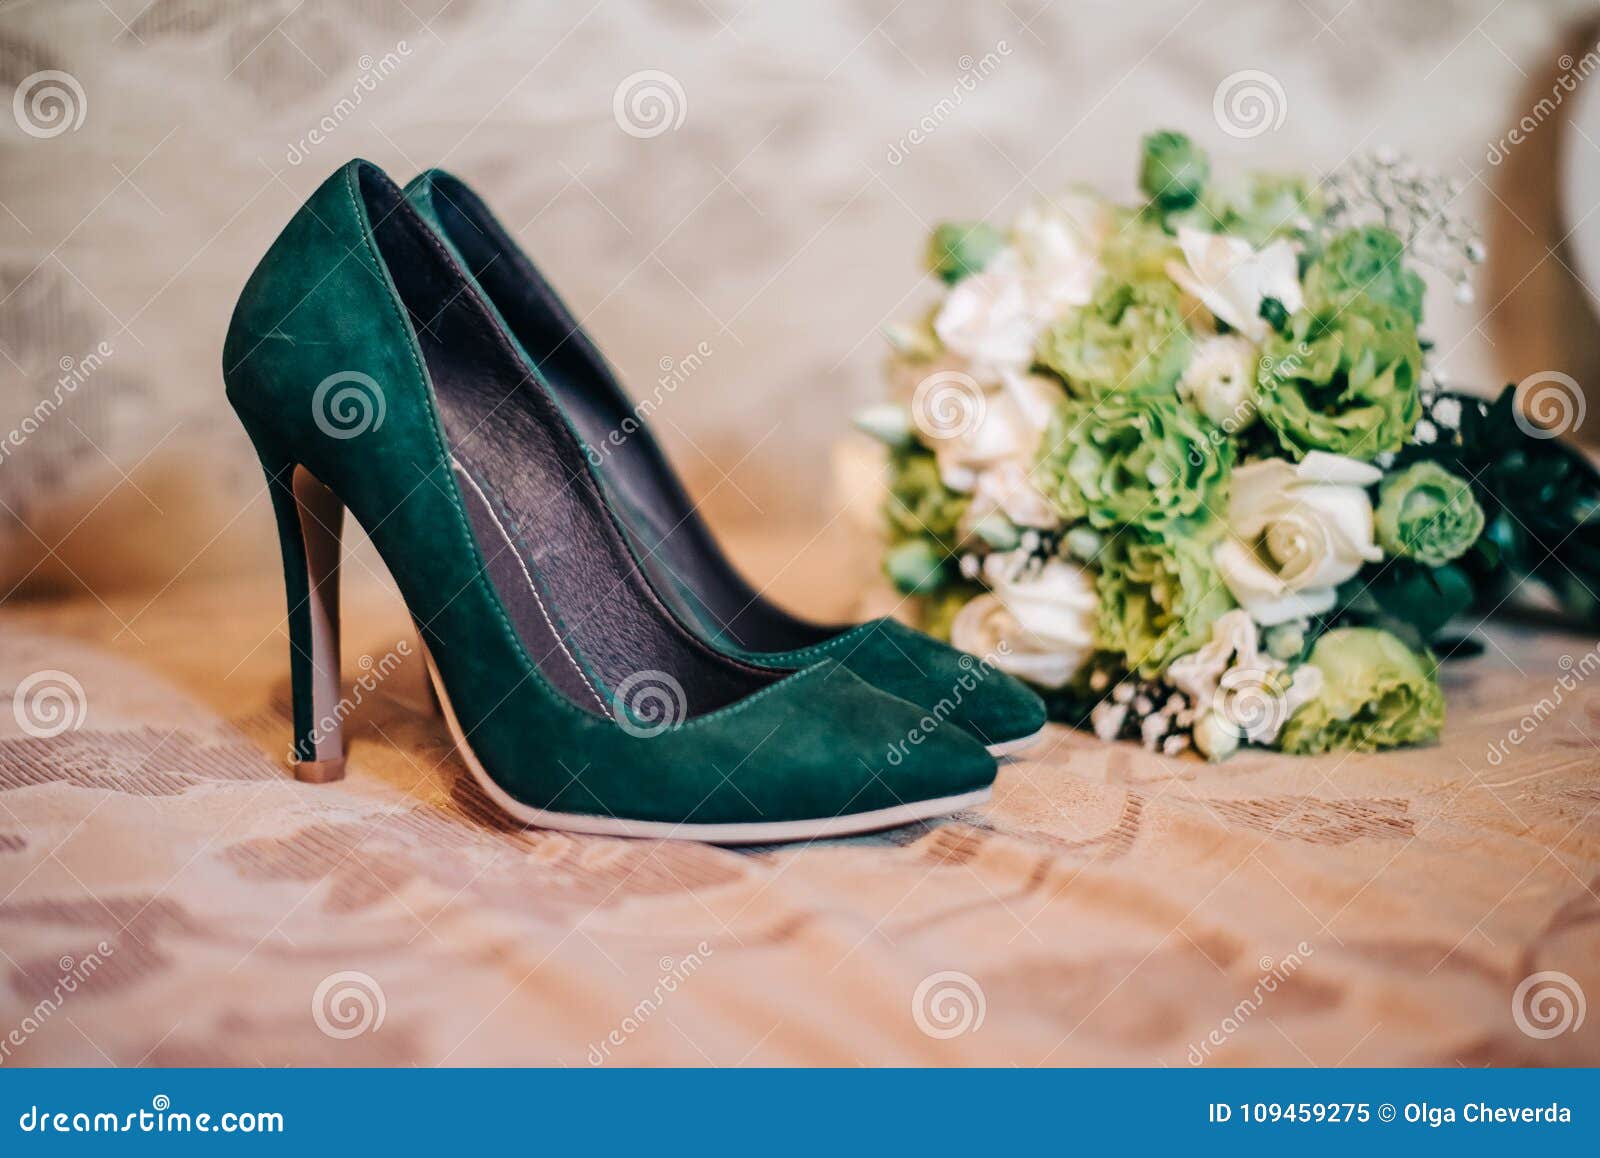 zapatos novia altos